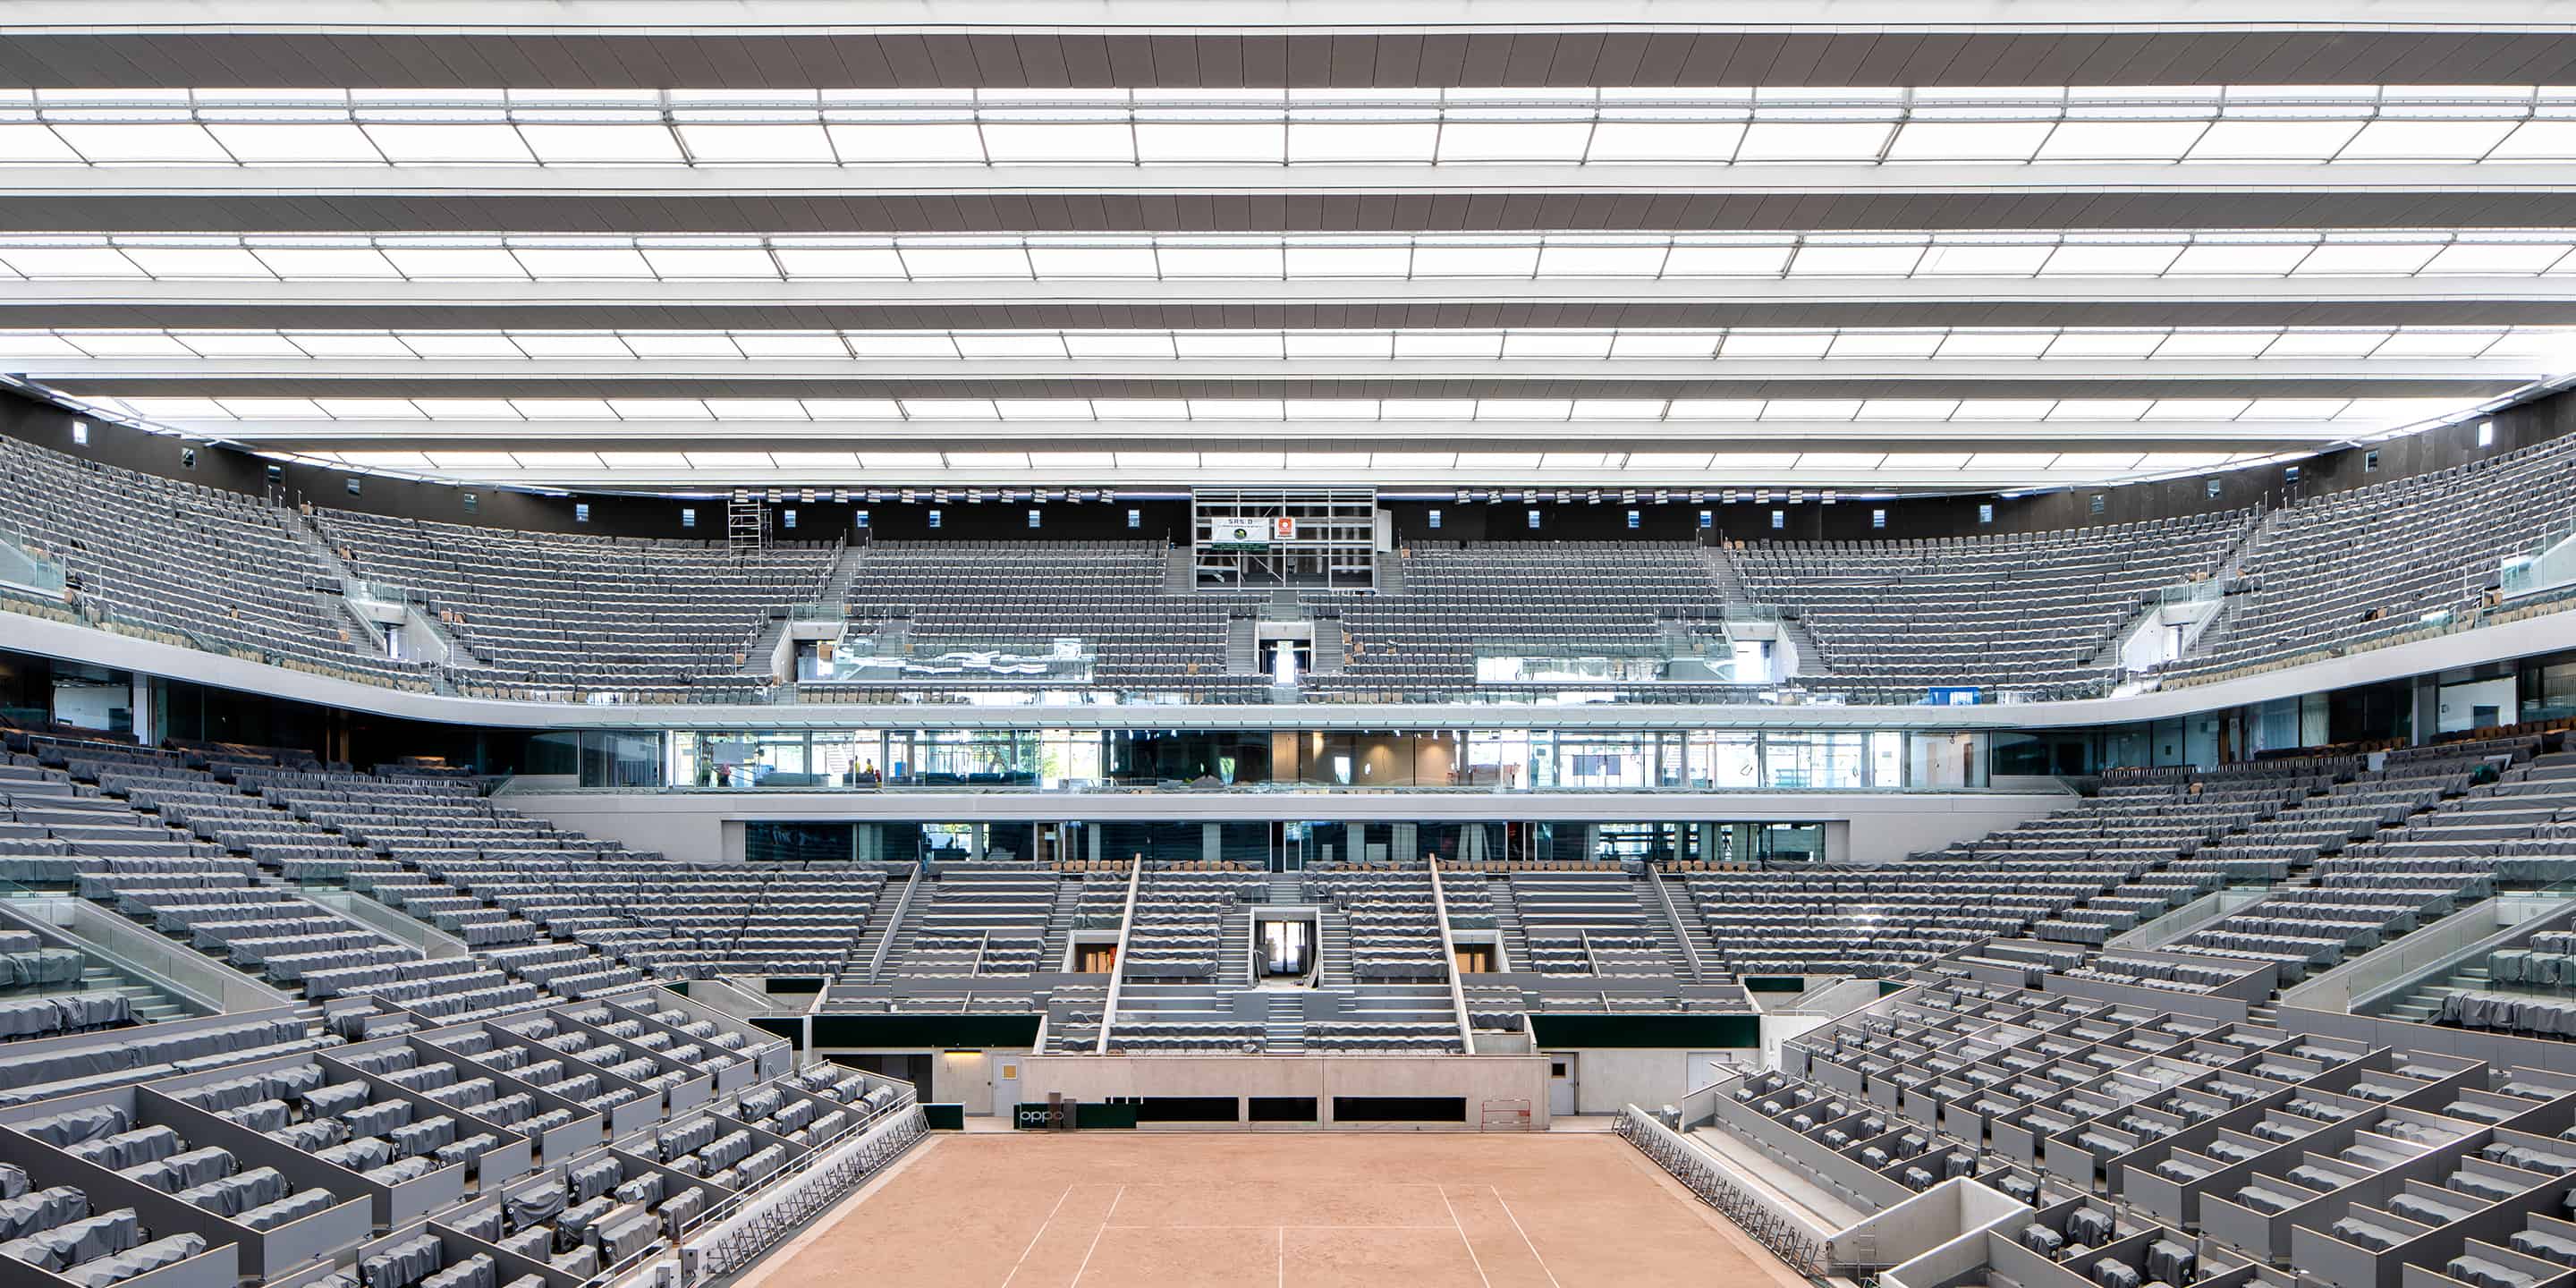 Toit mobile du court Central de Roland-Garros - DVVD